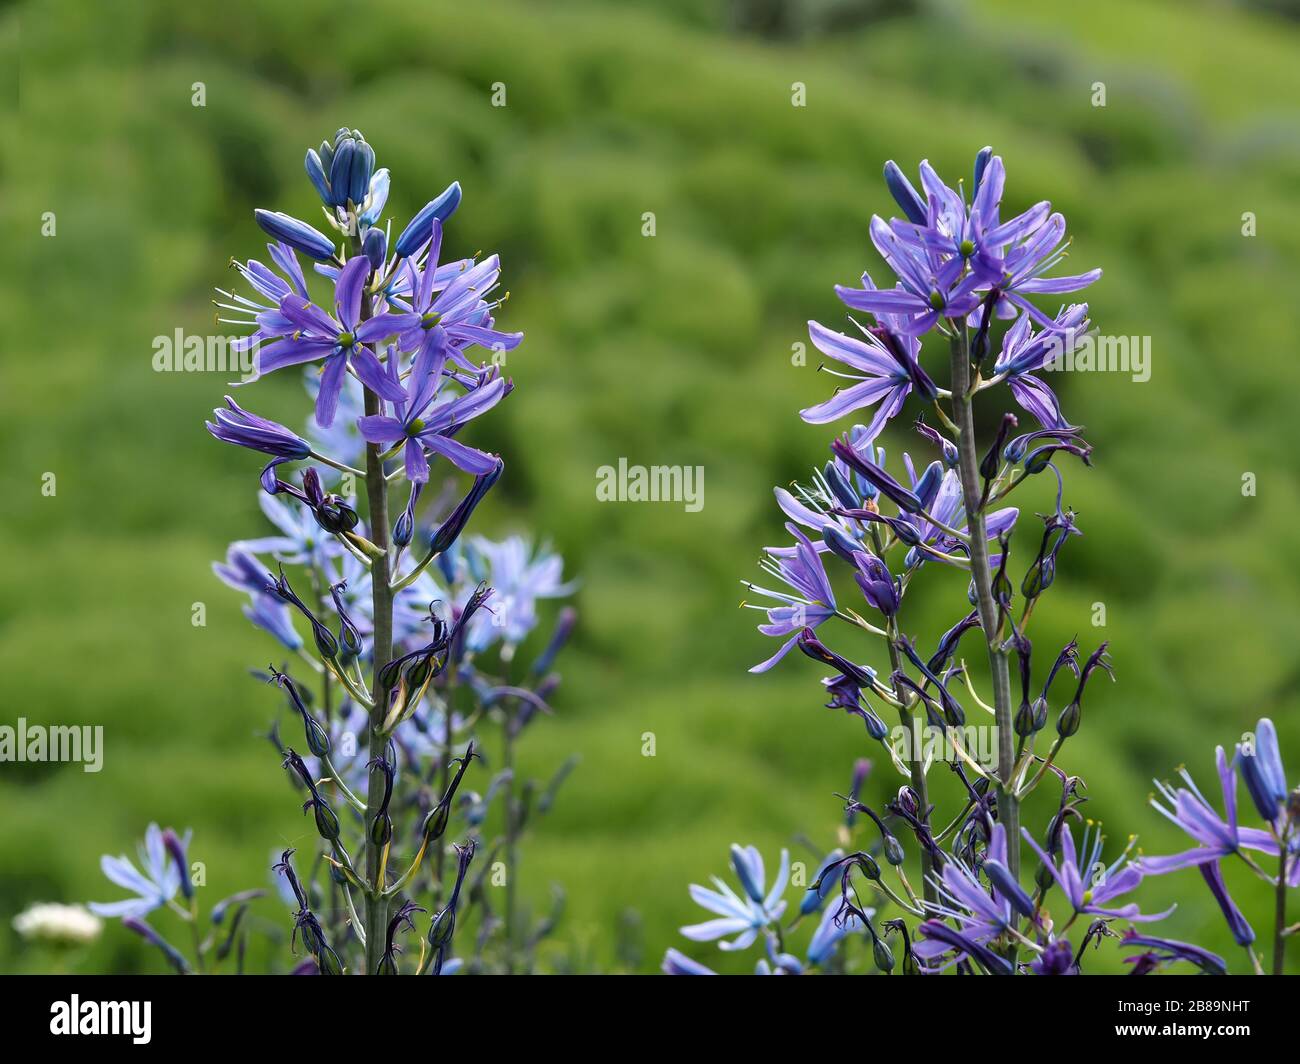 Nahaufnahme eines Blumenspießchens von Camassia mit Knospen, mauve Flaudern und fertigen Blumen Stockfoto